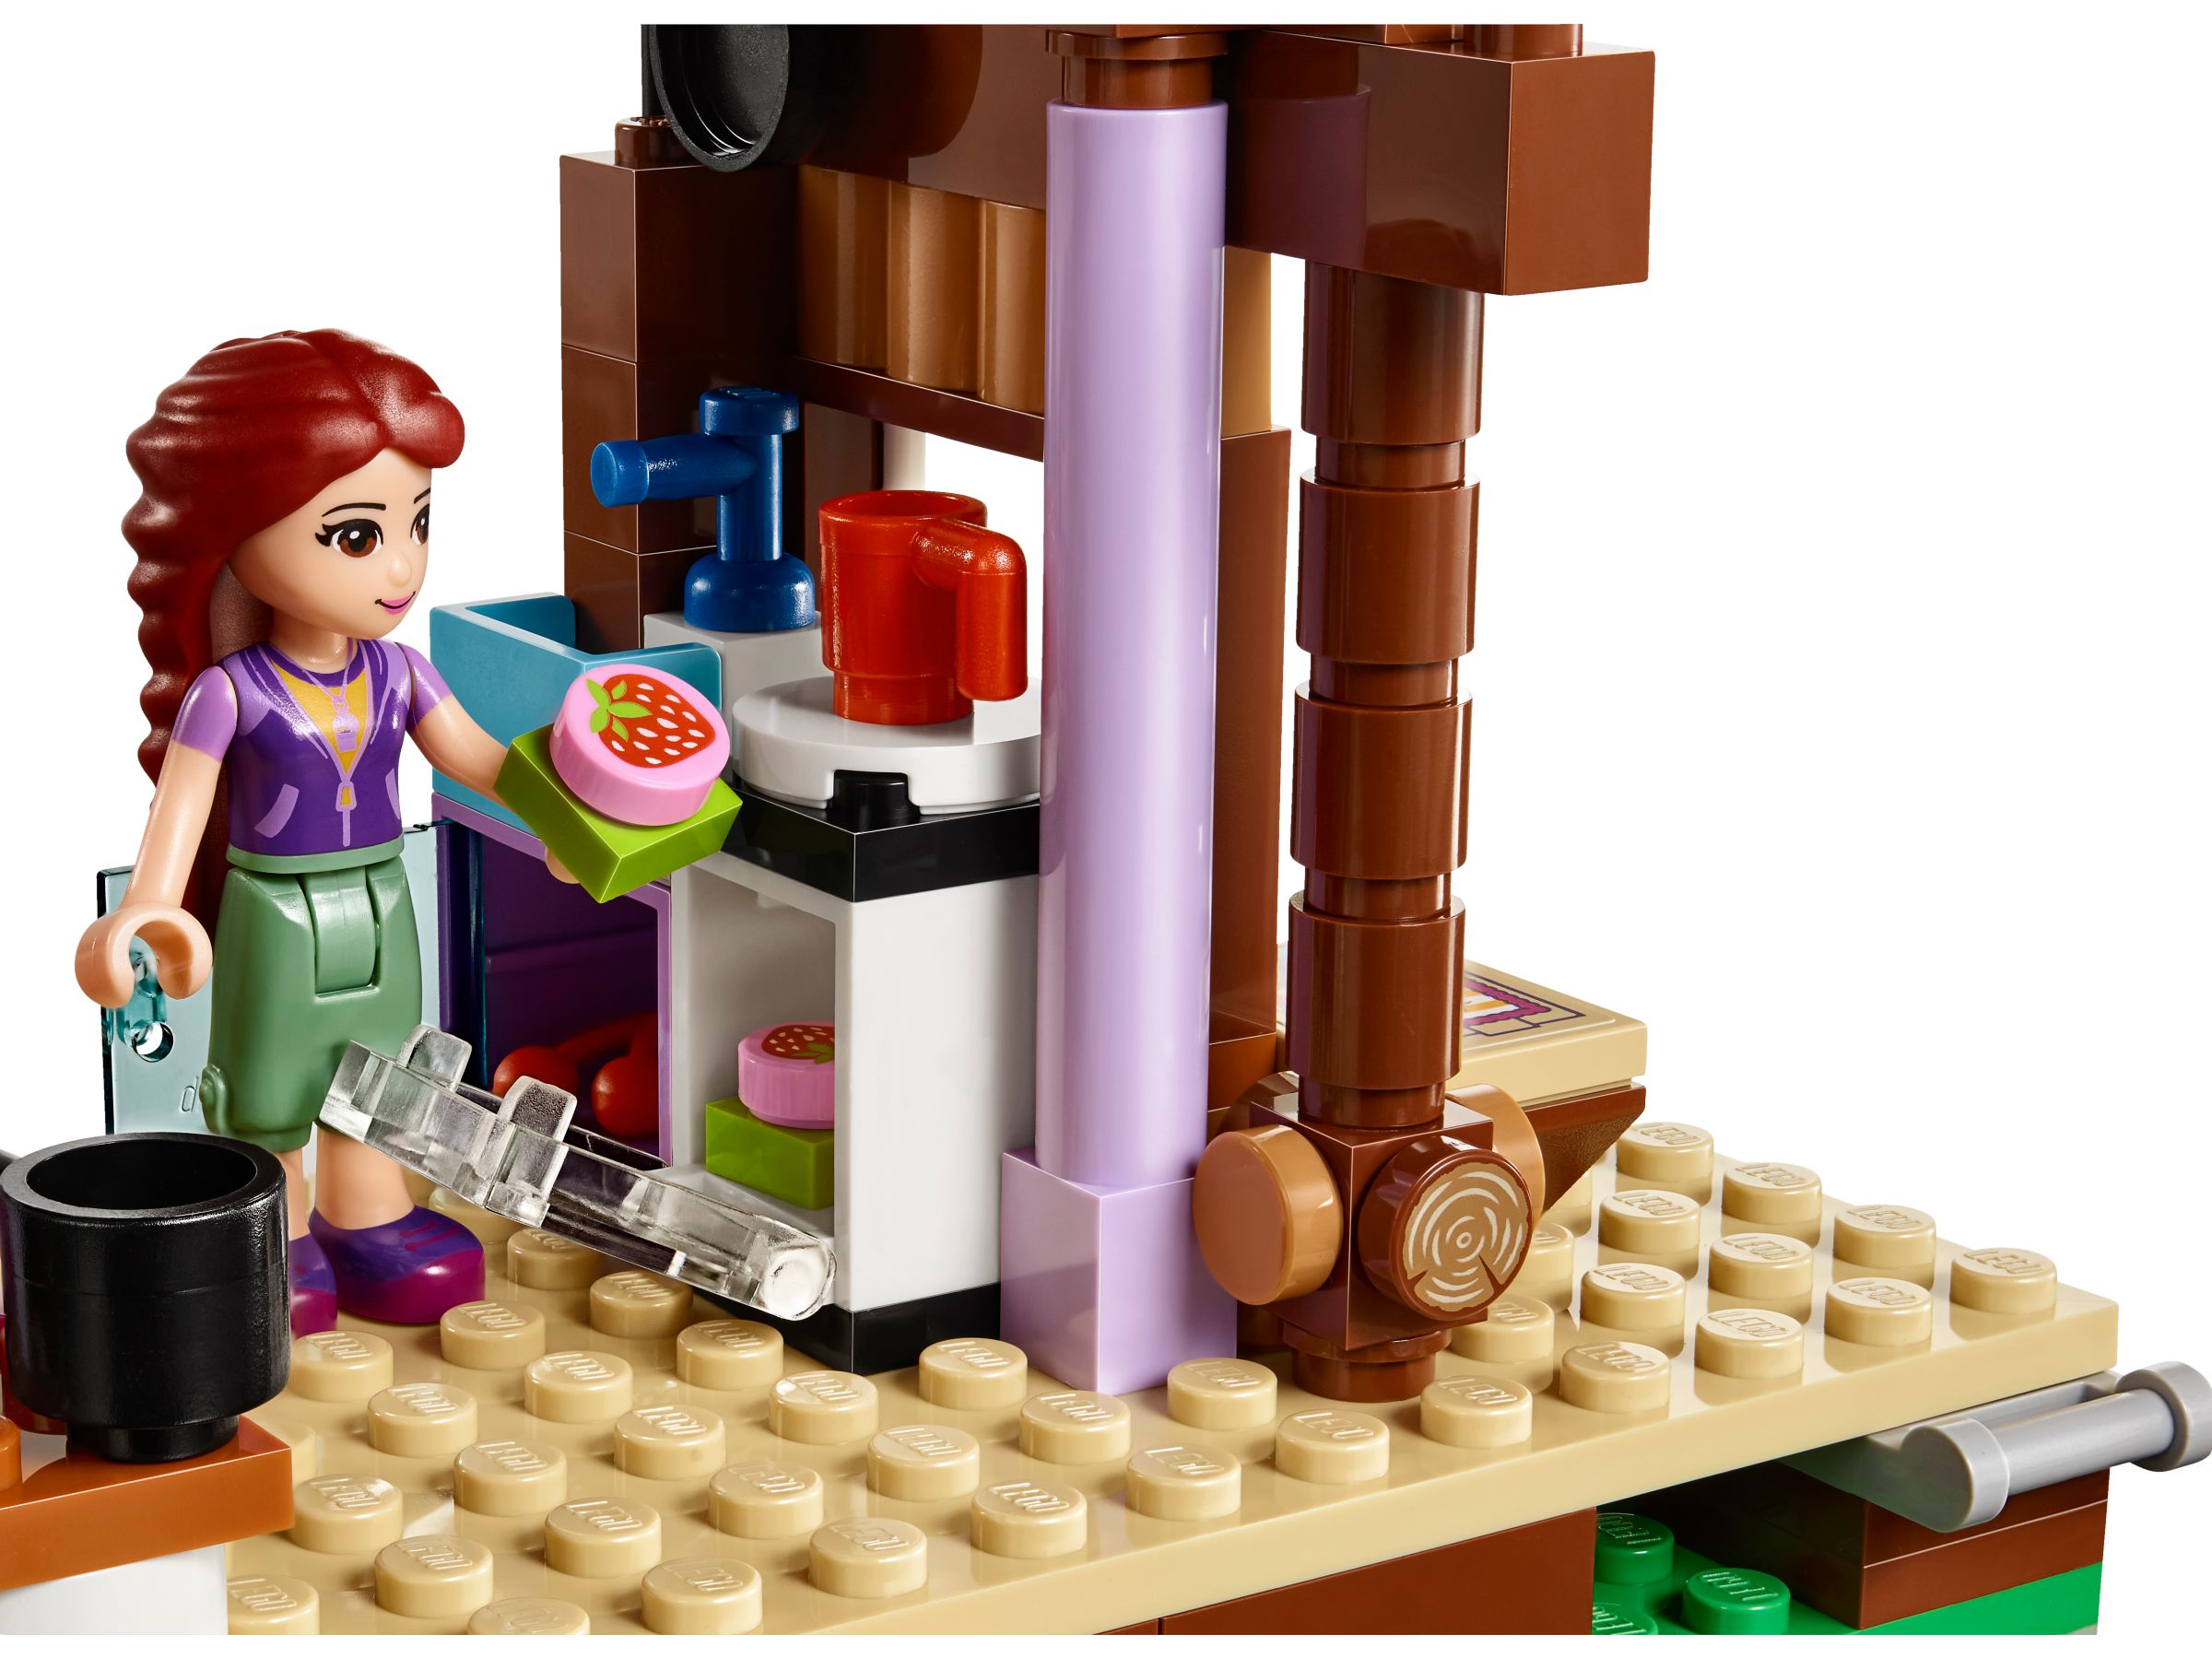 Lego Friends. Спортивный лагерь: дом на дереве  